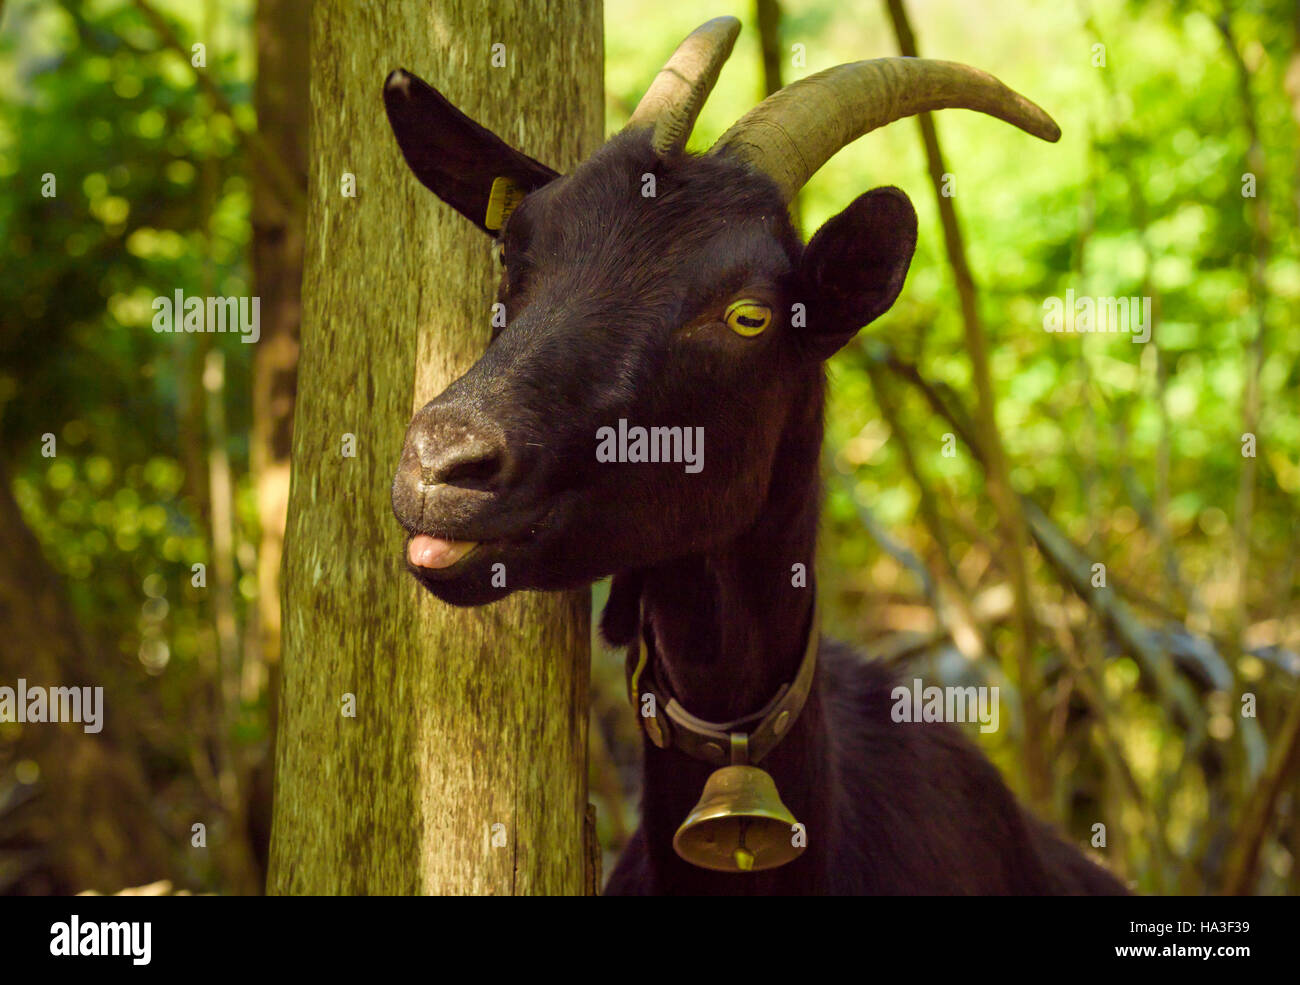 Animale divertente immagine catturata nel villaggio Quentin, Svizzera , con un domestico di capra nera con la lingua fuori e una campana al suo collo Foto Stock